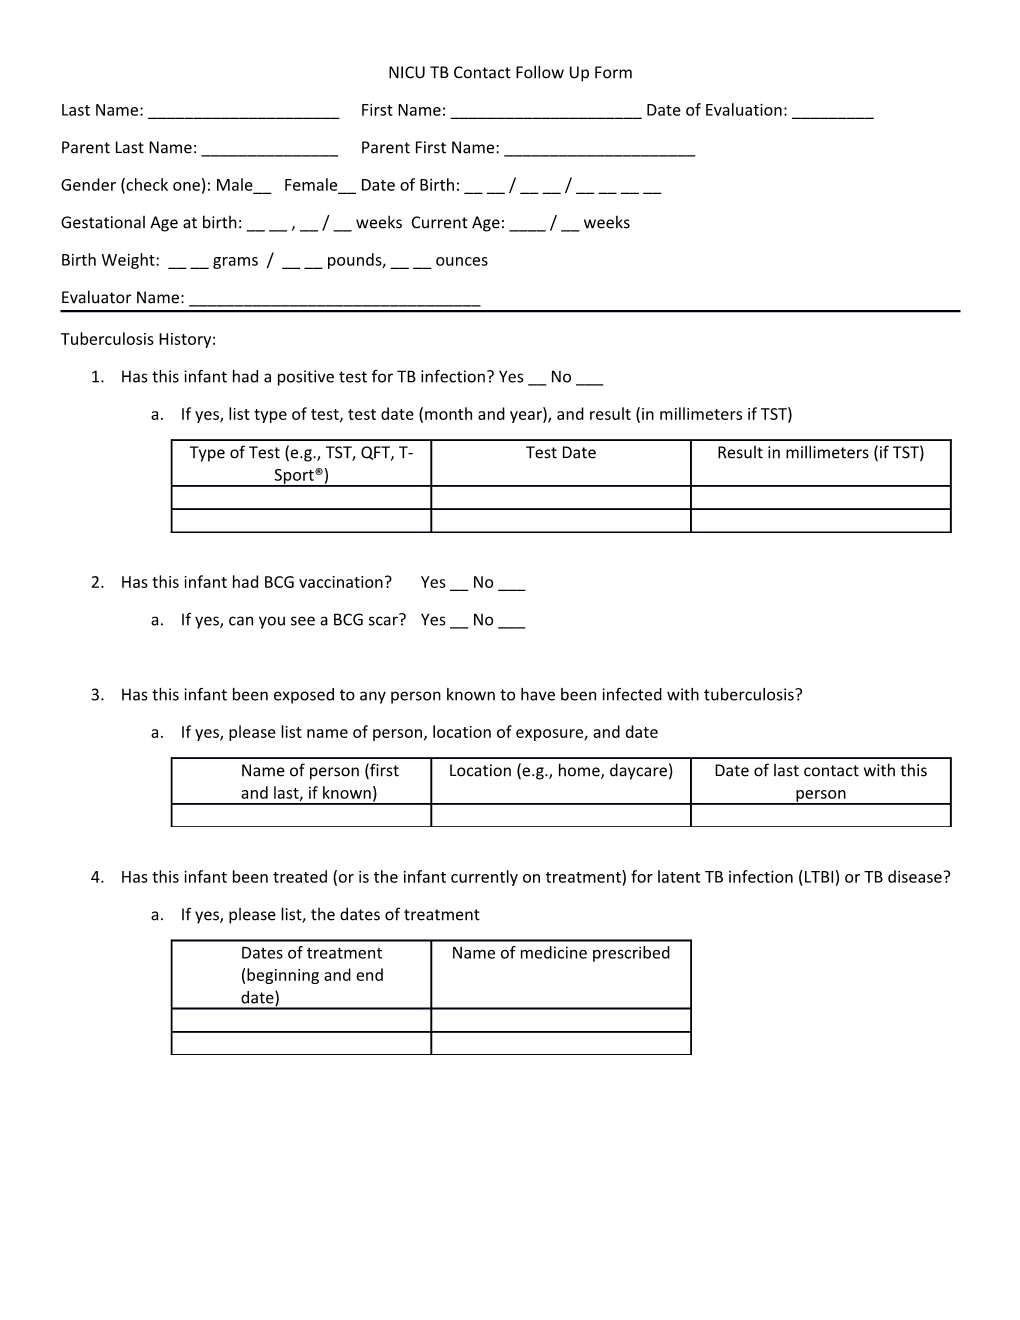 NICU TB Contact Follow up Form